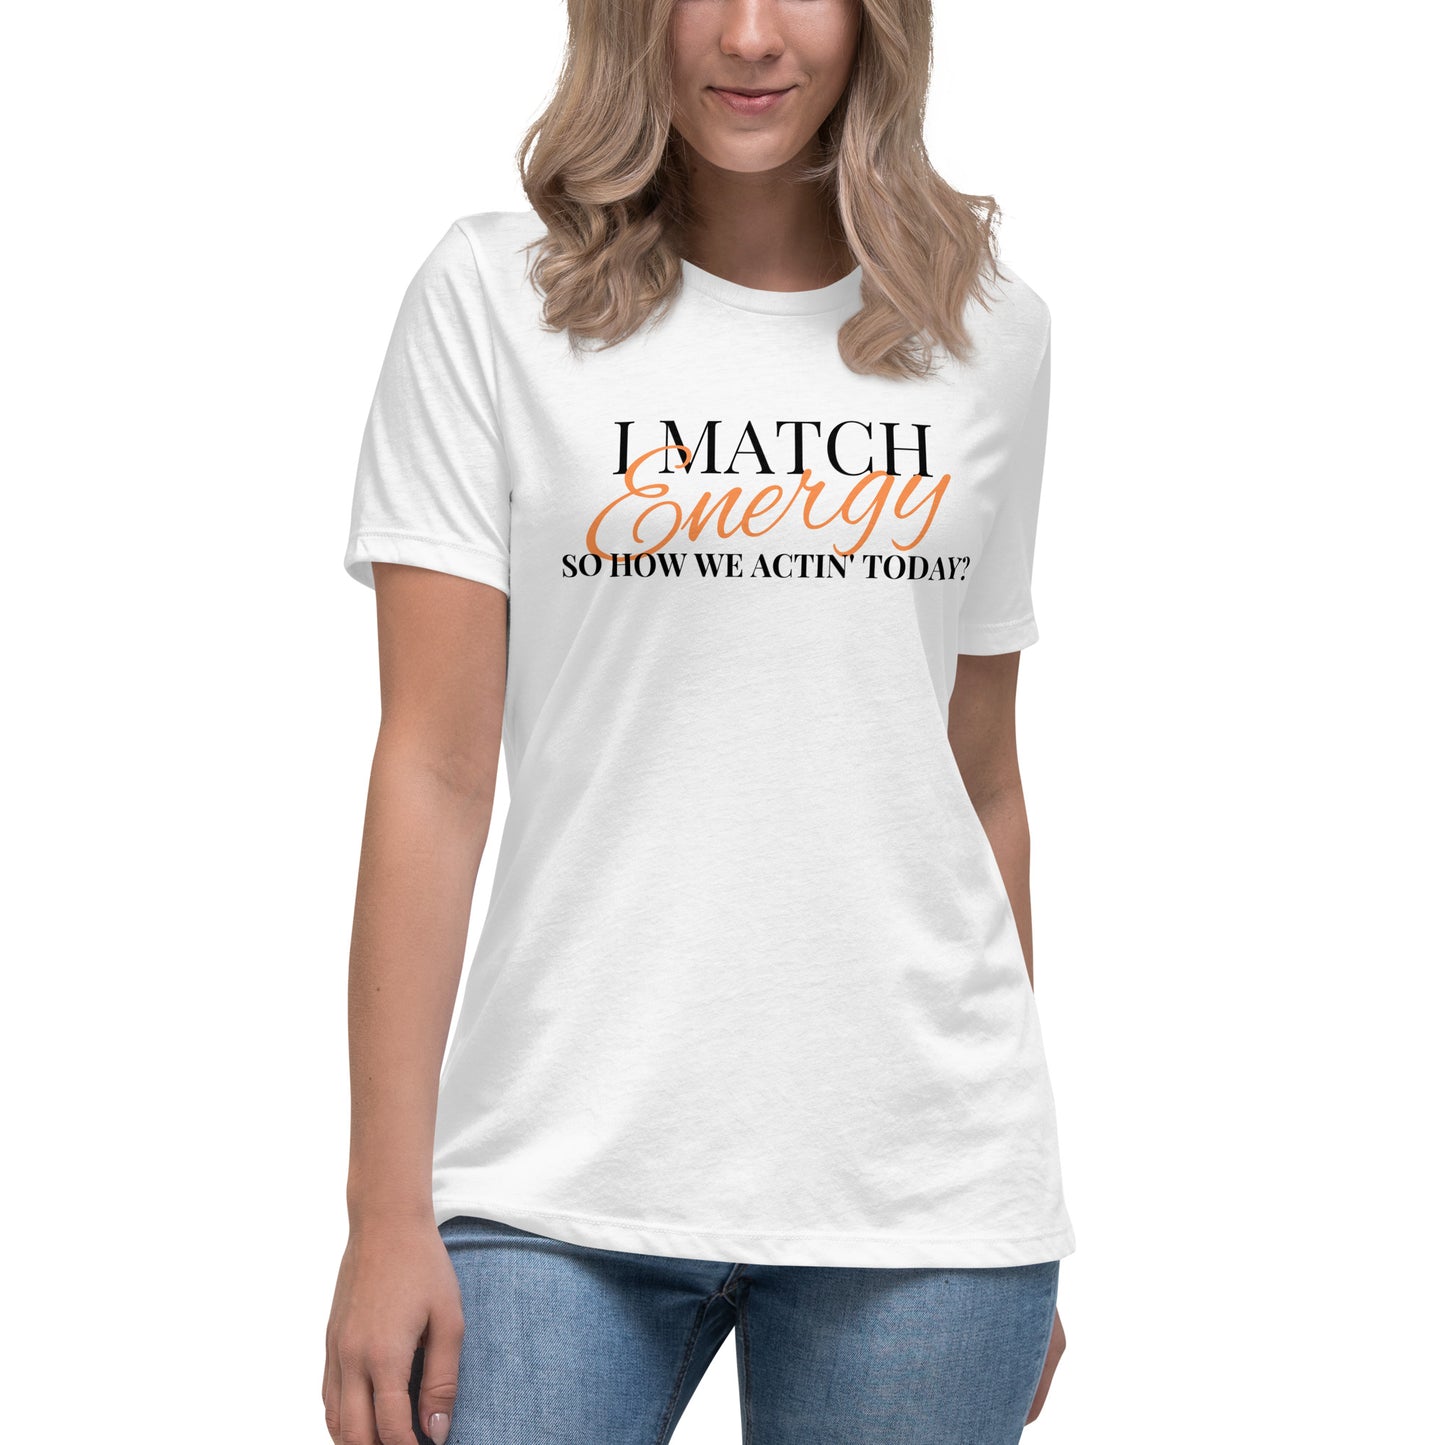 I Match Energy Women's Relaxed T-Shirt